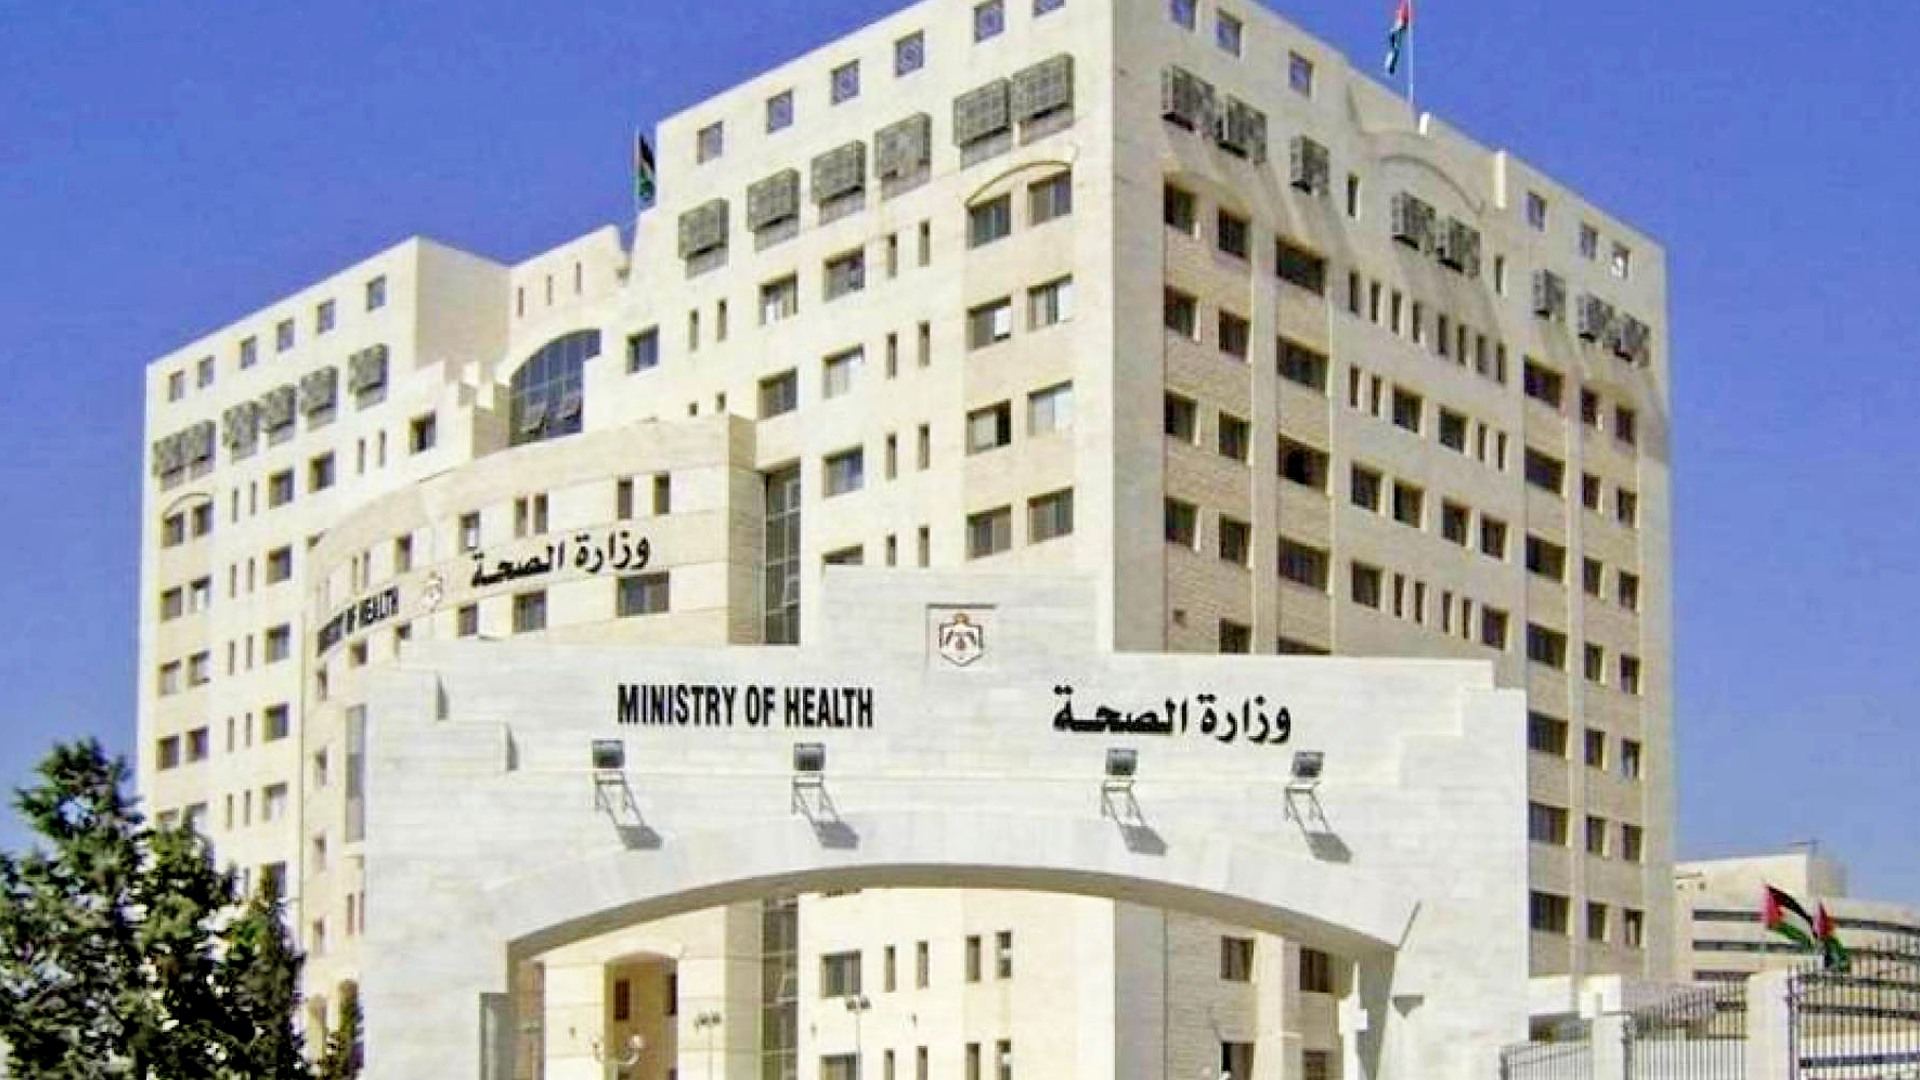 وزارة الصحة الأردنية تعلن عن اكثر من 70 فرصة عمل لكلا الجنسين في مجالات عديدة و كثيرة